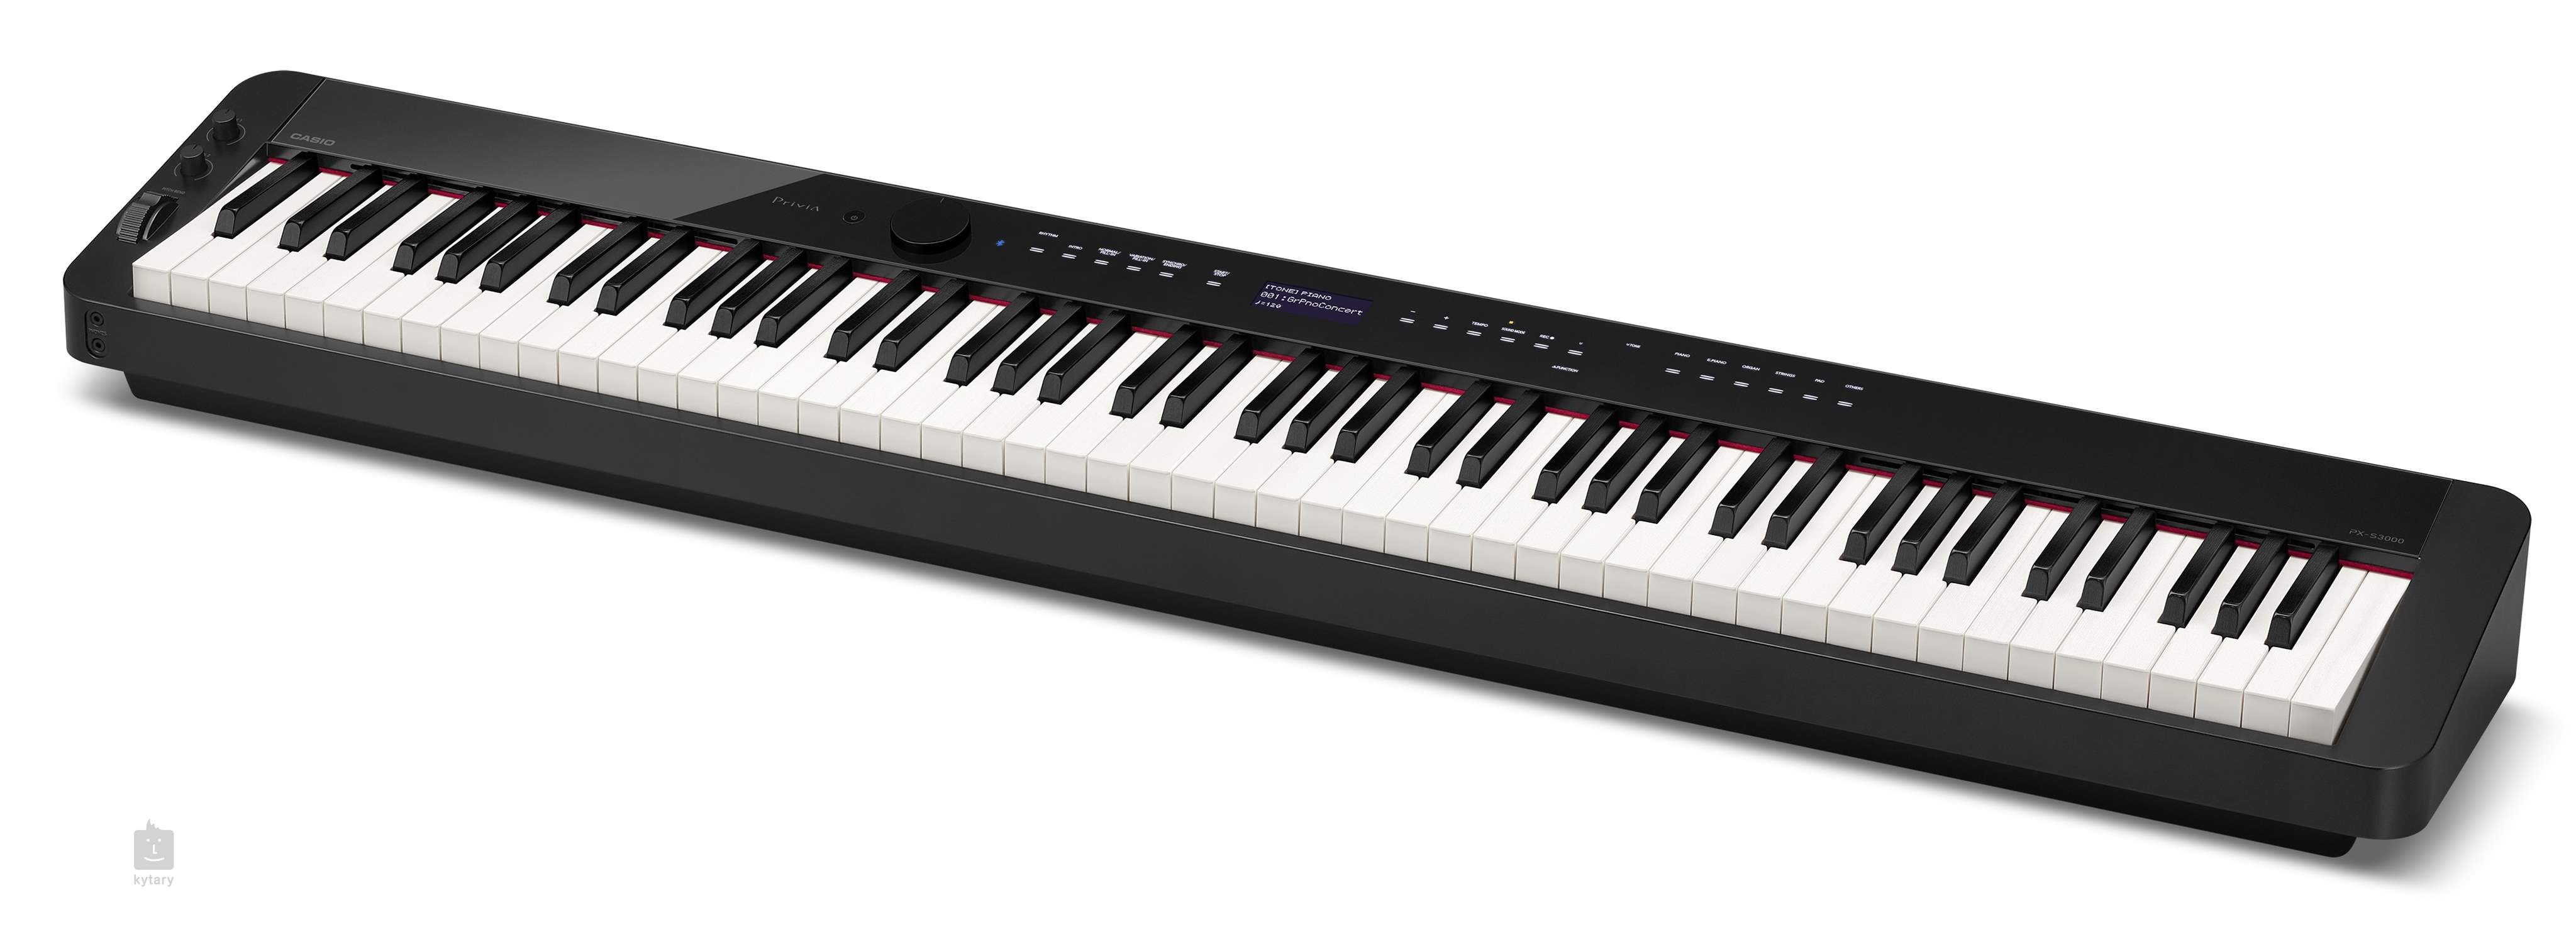 カシオ Privia PX-S3000BK 電子ピアノ - 鍵盤楽器、ピアノ